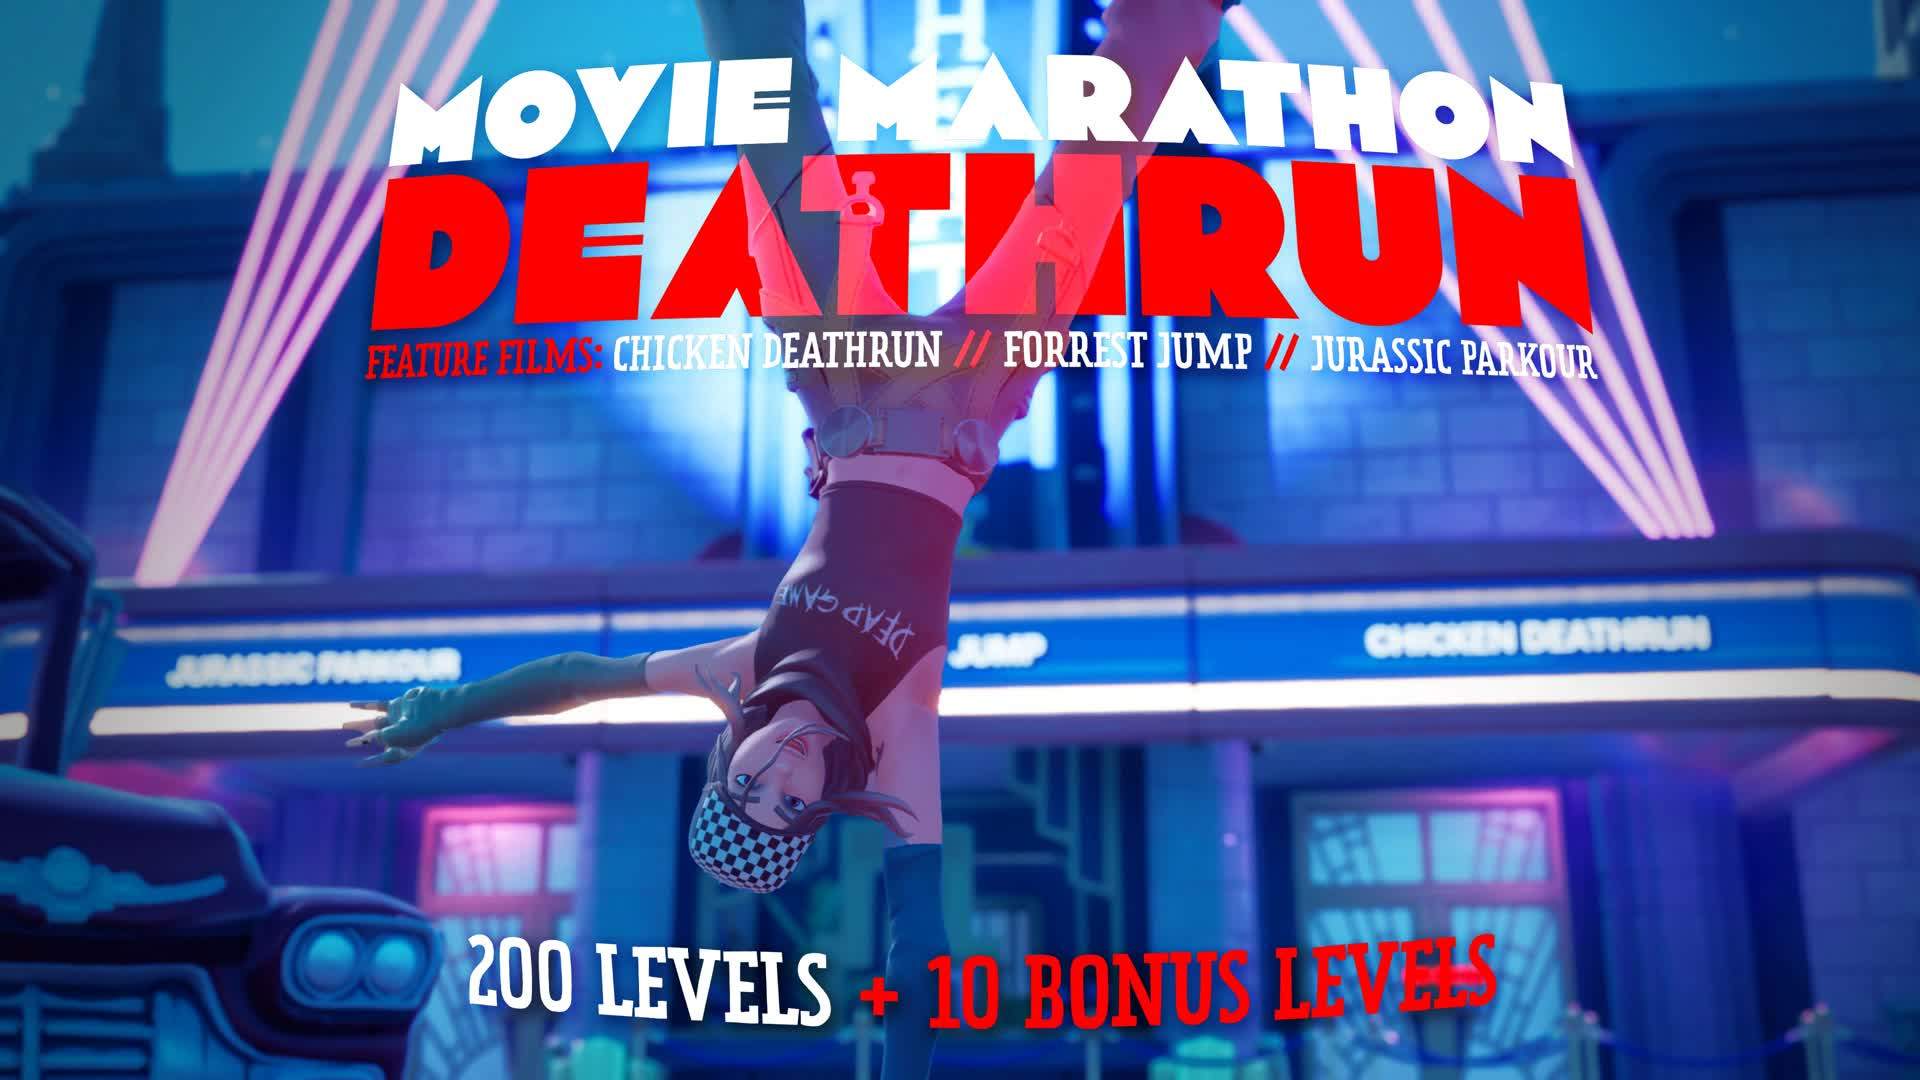 Movie Marathon Deathrun (210 LEVELS)